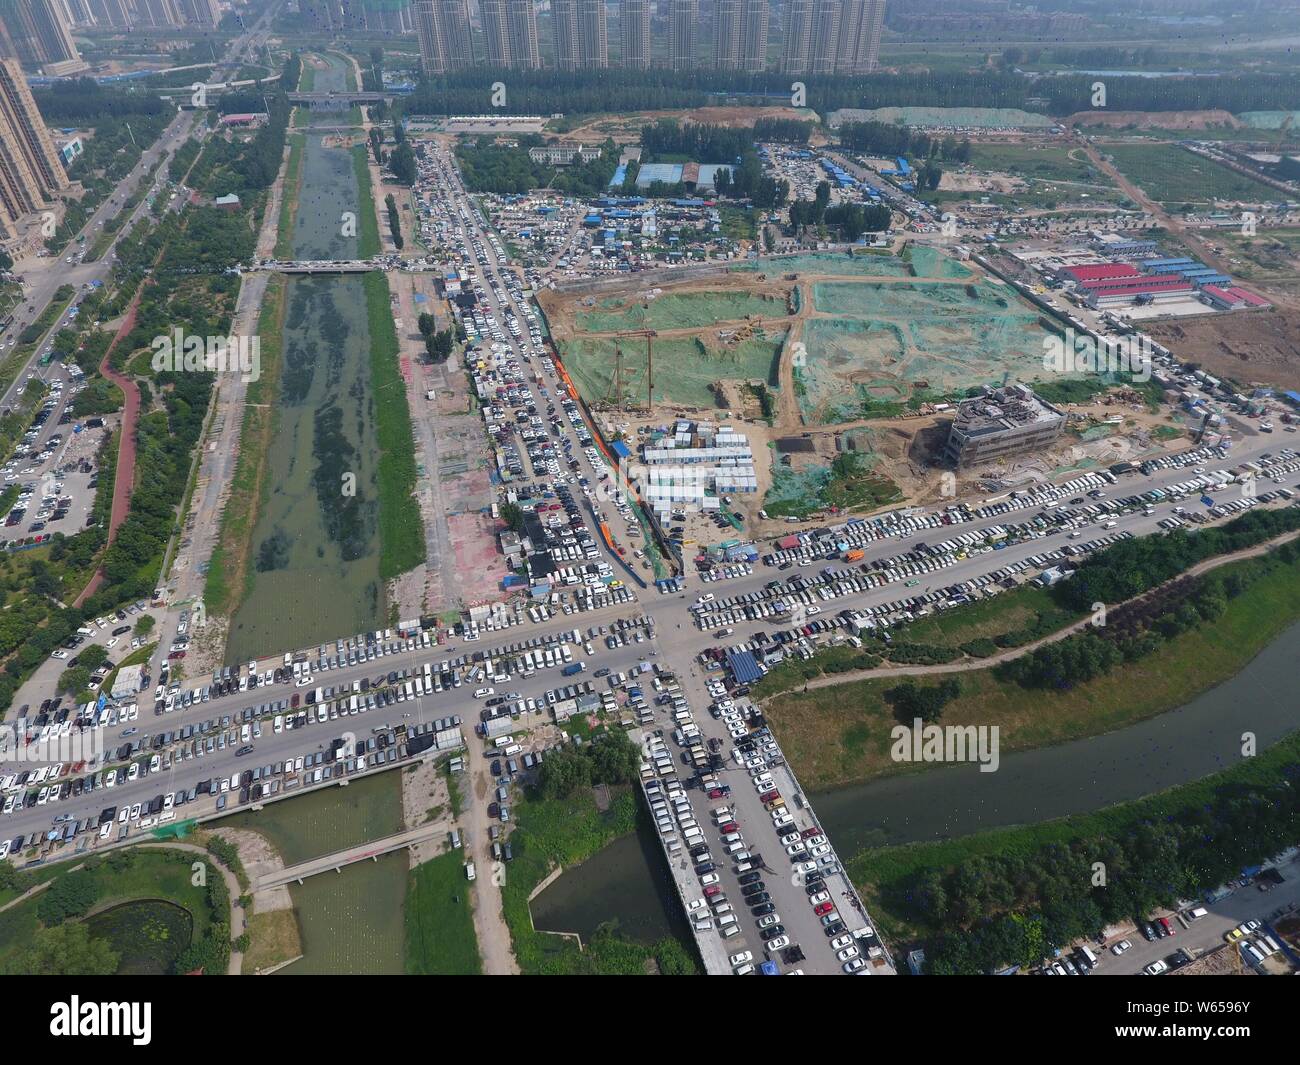 Dans cette vue aérienne, des centaines de voitures usagées sont alignés sur les routes, ce qui influe sur la circulation, dans la ville de Zhengzhou, Henan en Chine centrale Banque D'Images